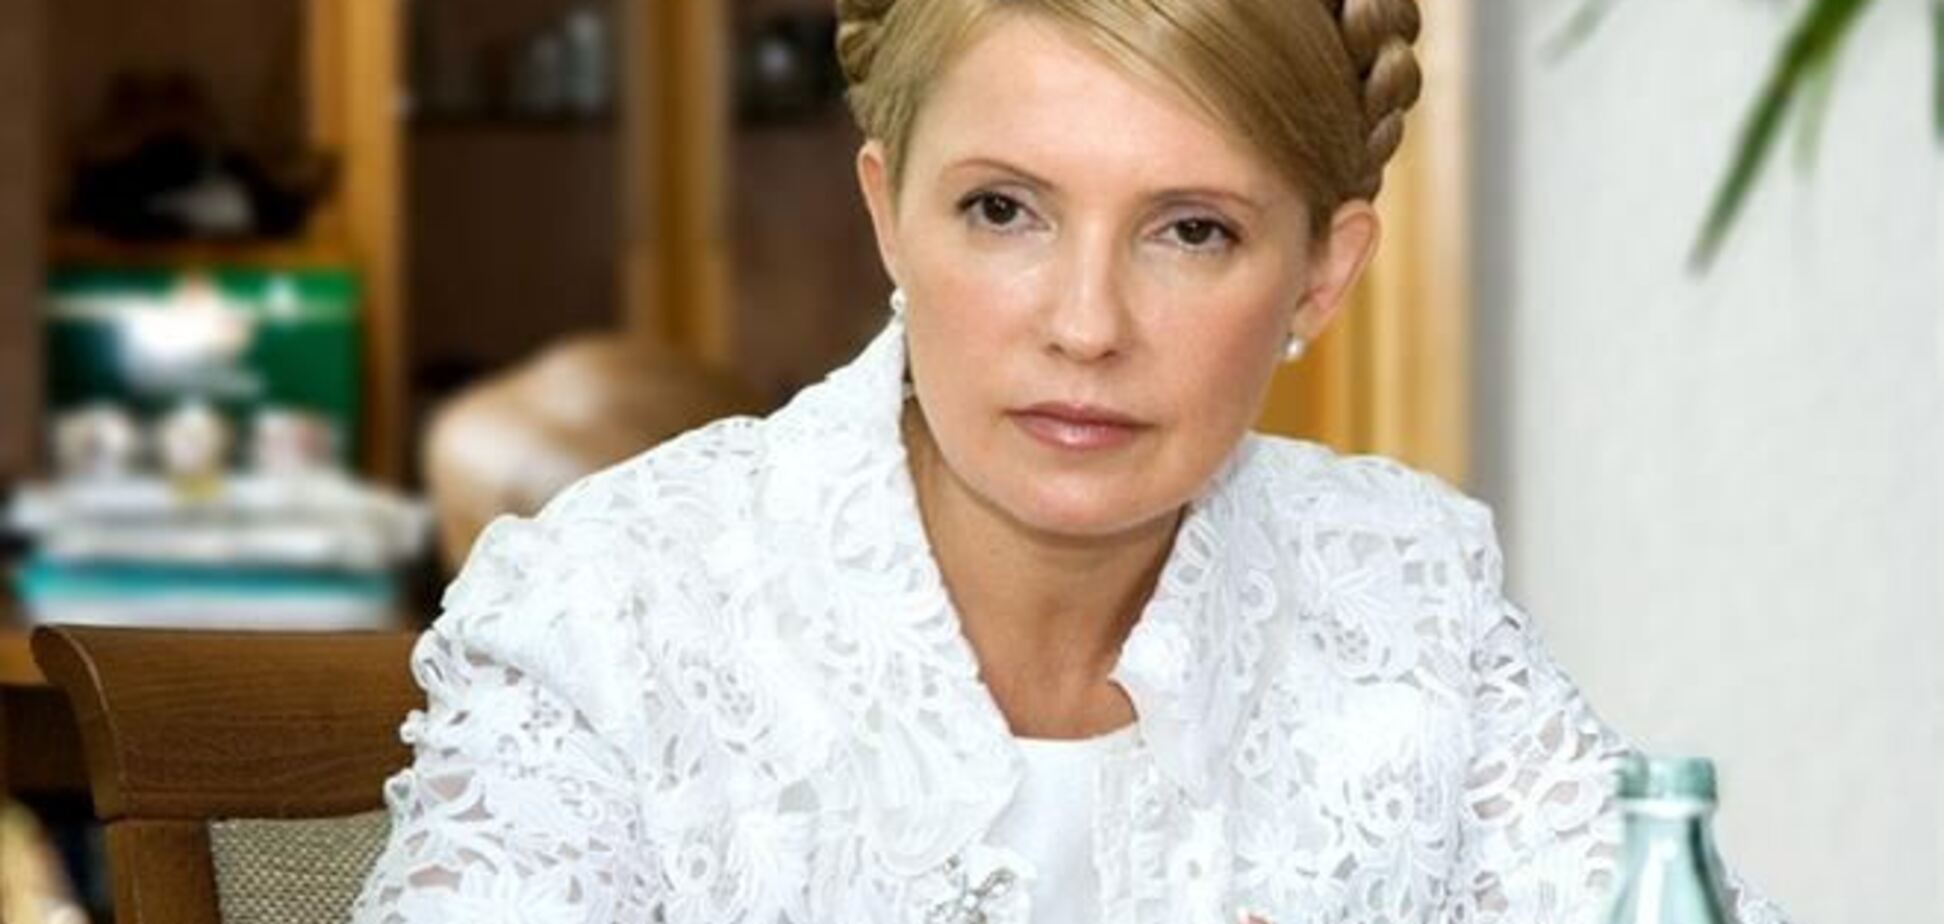 Не ассоциация с ЕС зависит от Тимошенко, а судьба Тимошенко зависит от соглашения – эксперт